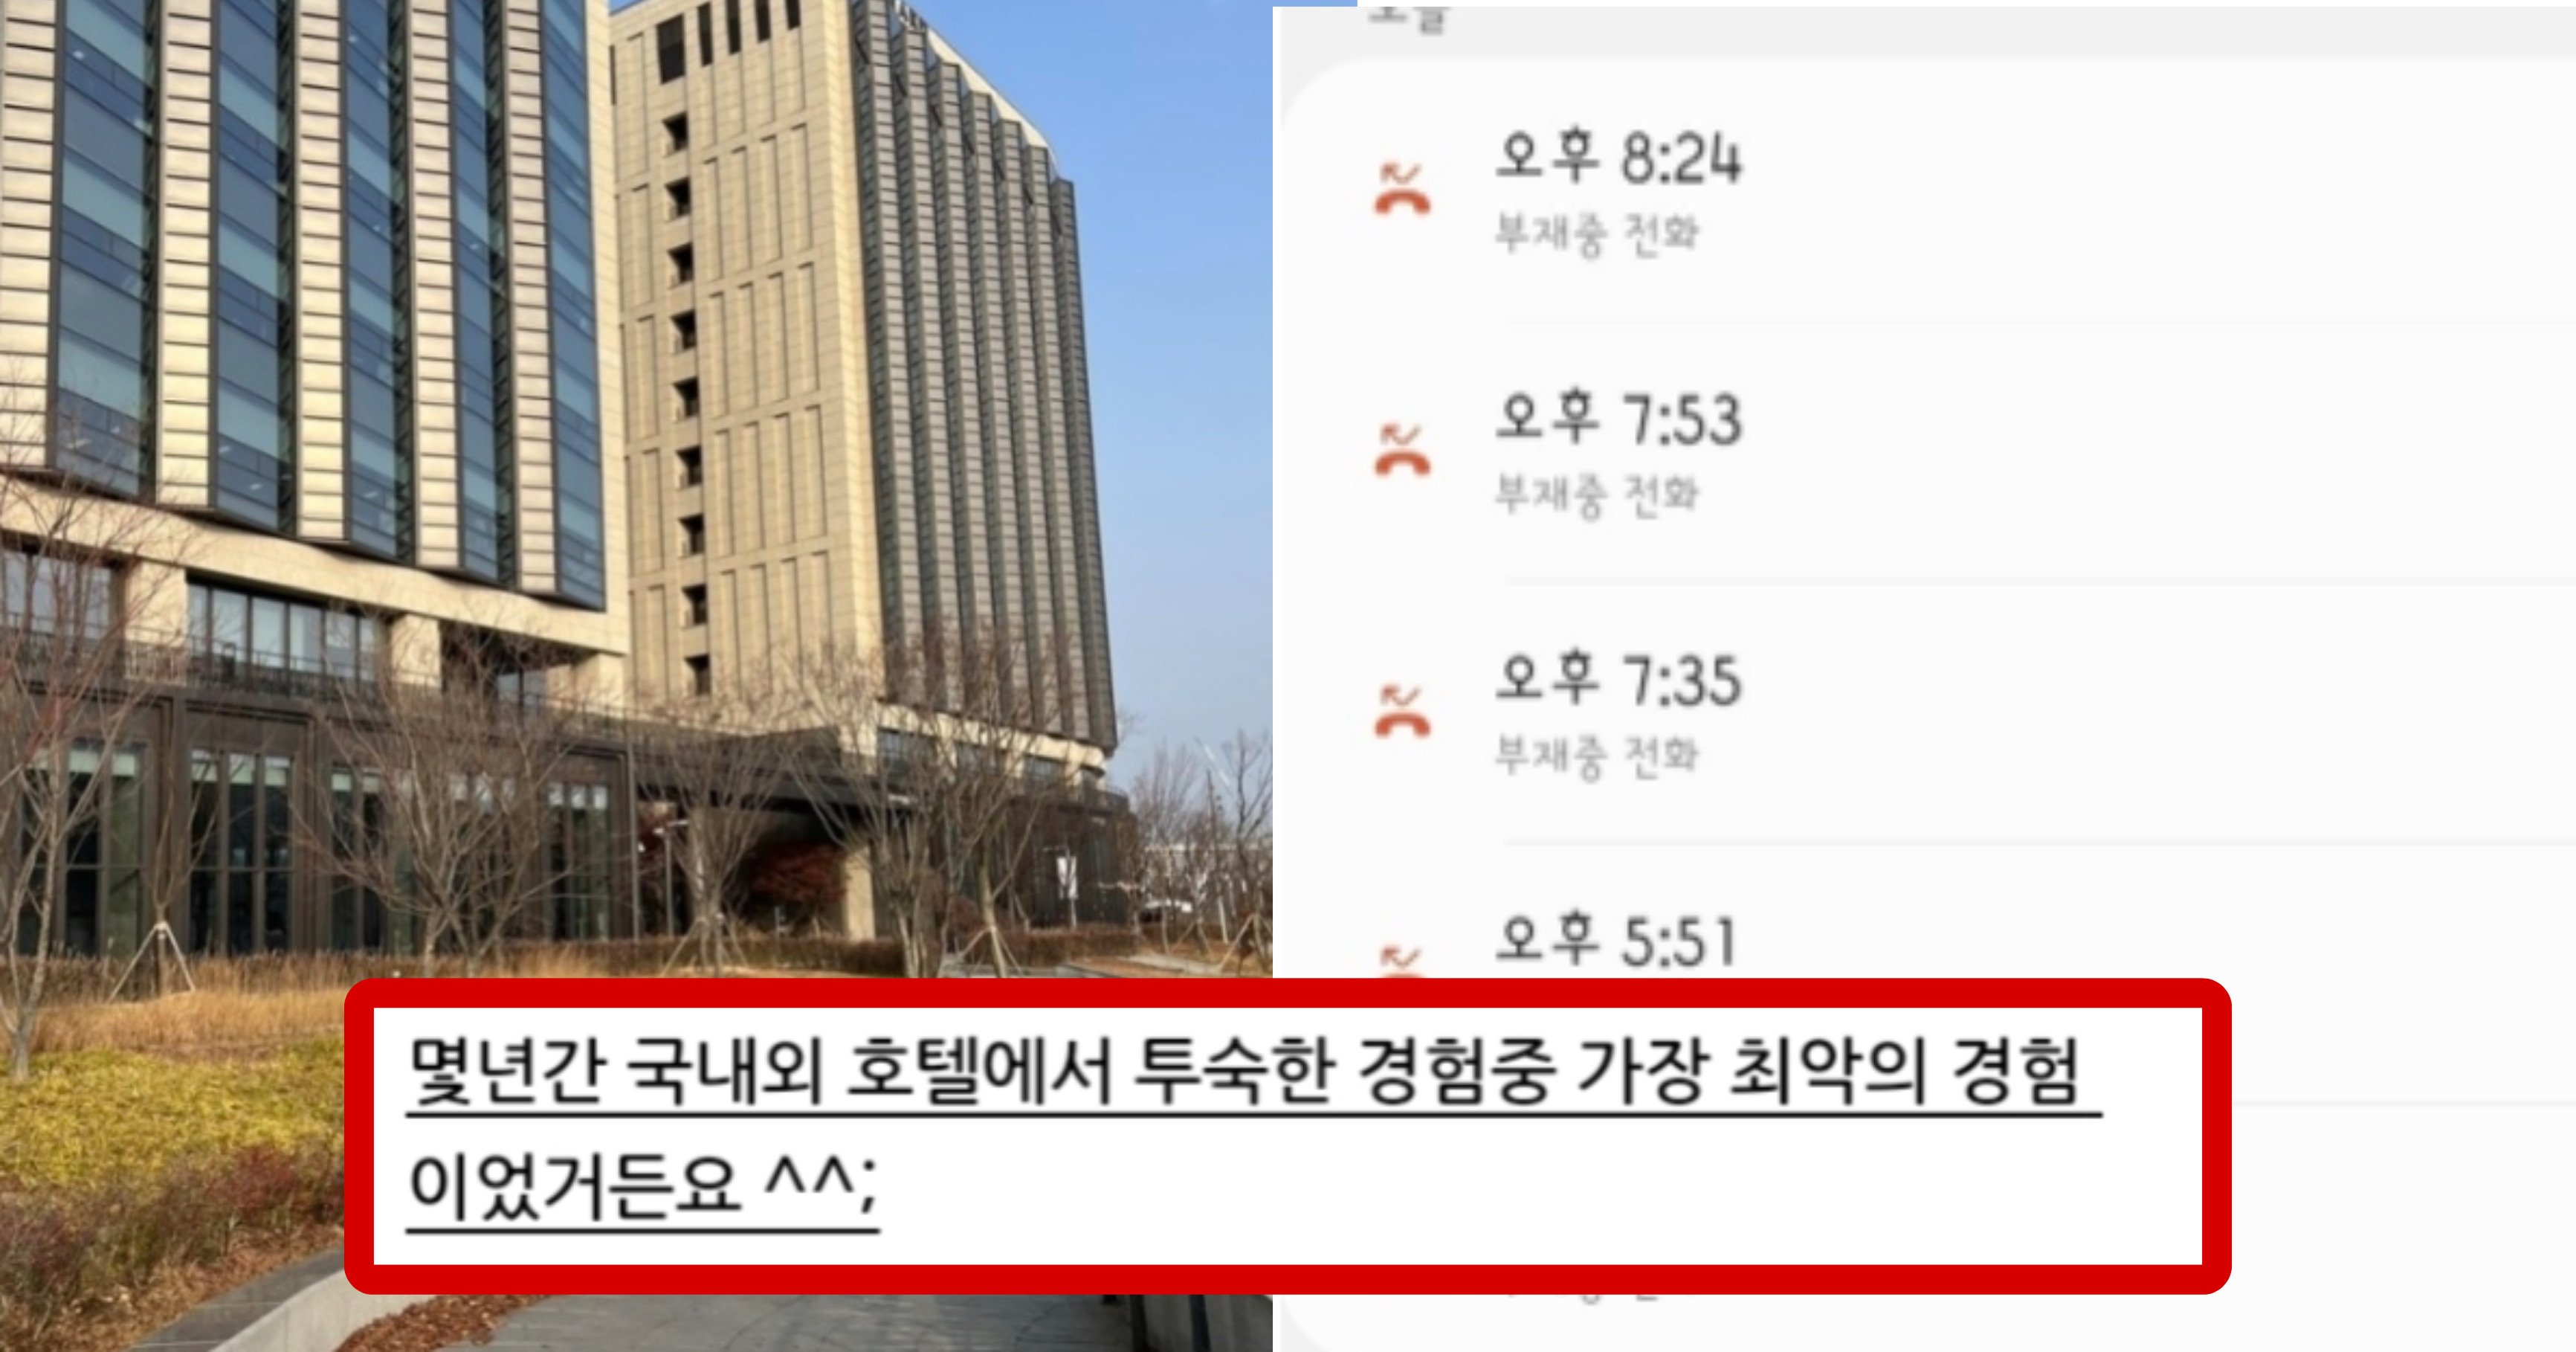 7aa88cf6 da85 4b3b adb4 d6c809a90348.jpeg?resize=412,232 - 호텔 커뮤니티를 난리 나게 만든 서울 의 한 호텔 비추 후기(+사진)